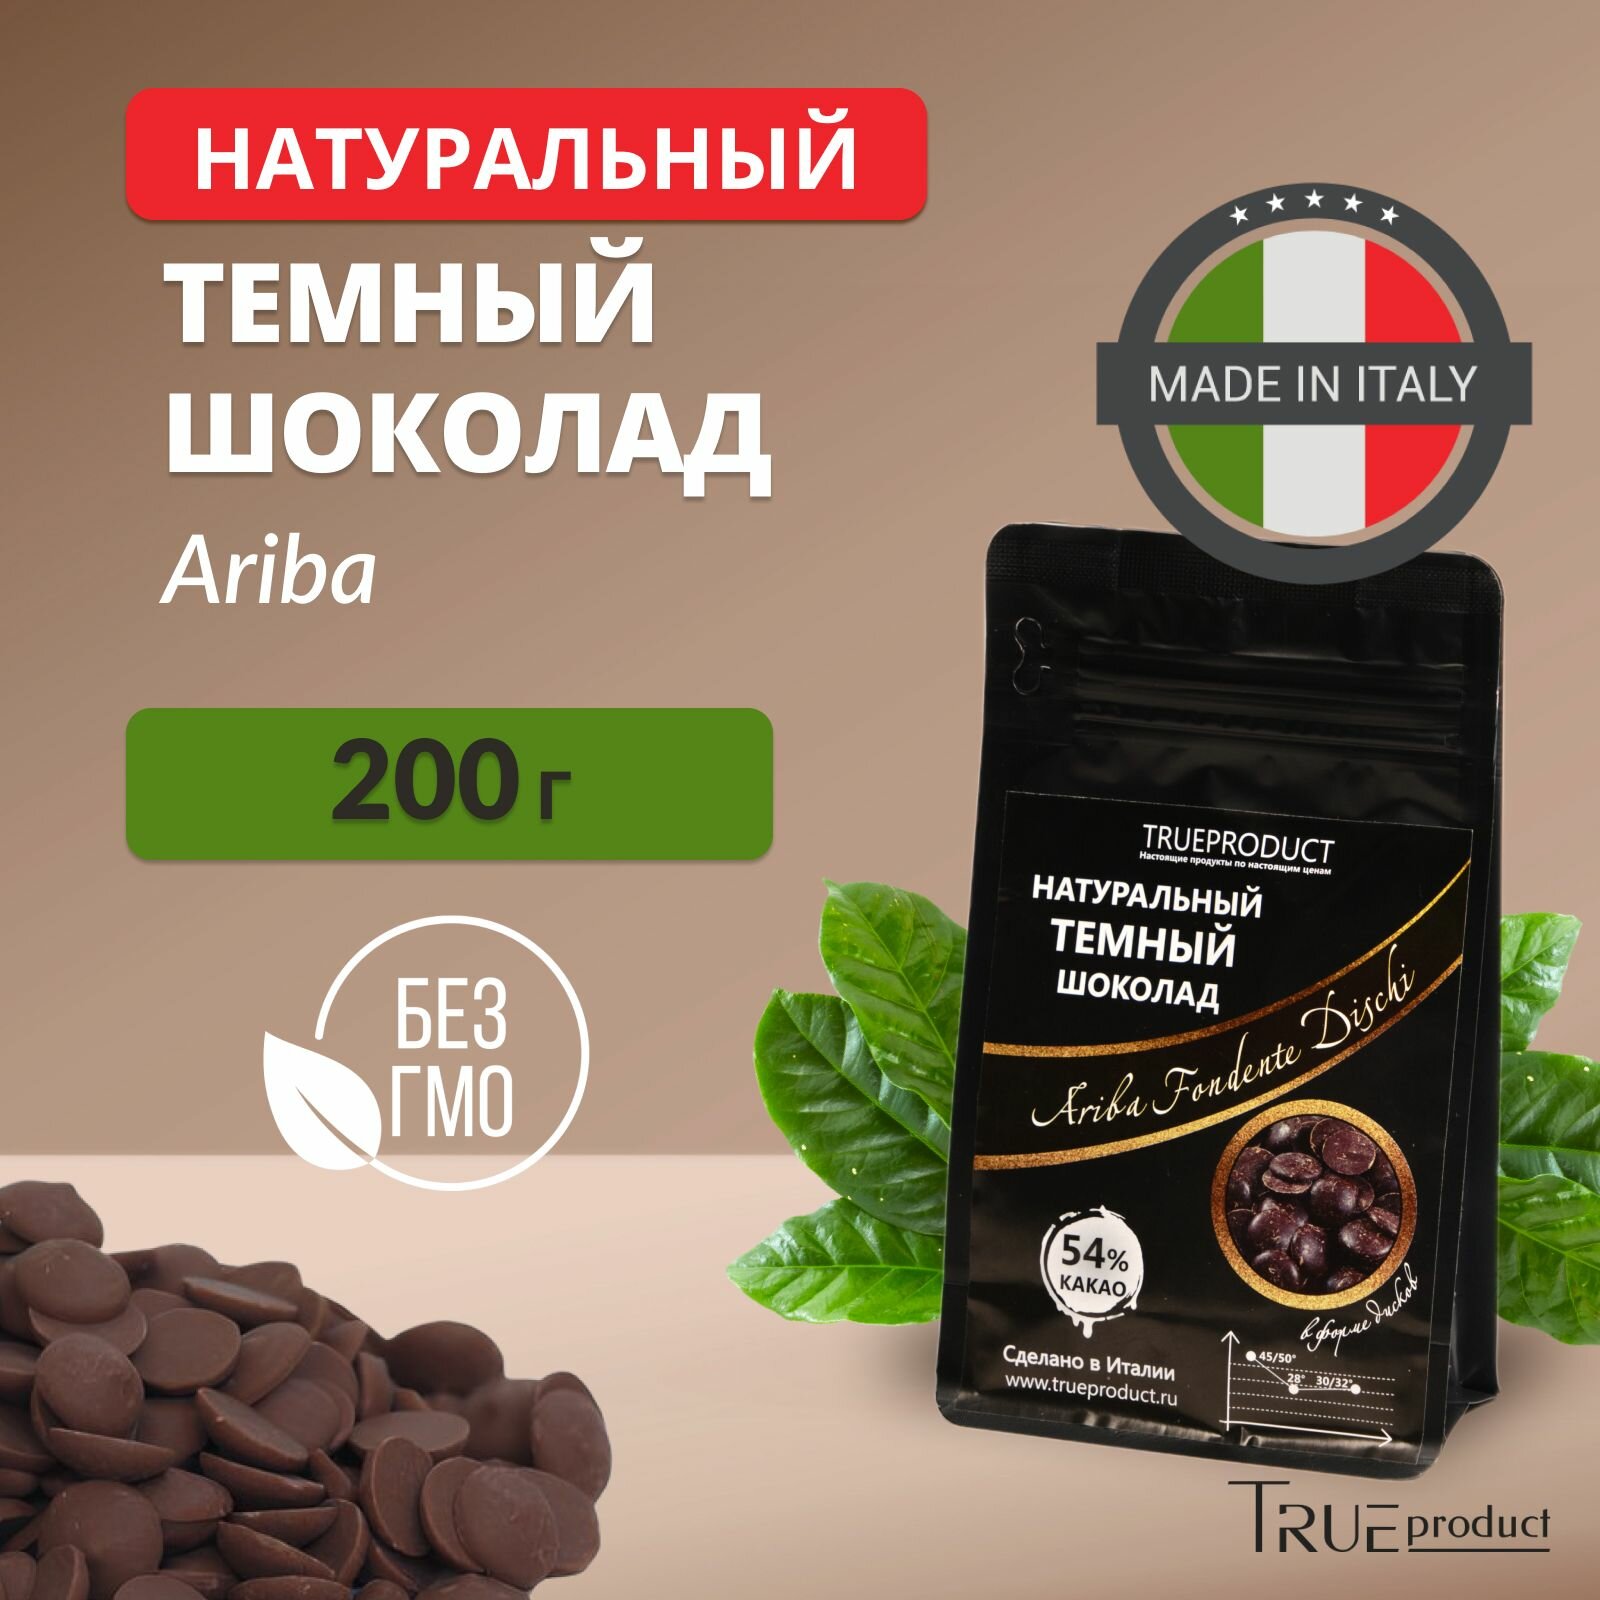 Темный шоколад Ariba Fondente Dischi 54% в калетах, 200 грамм